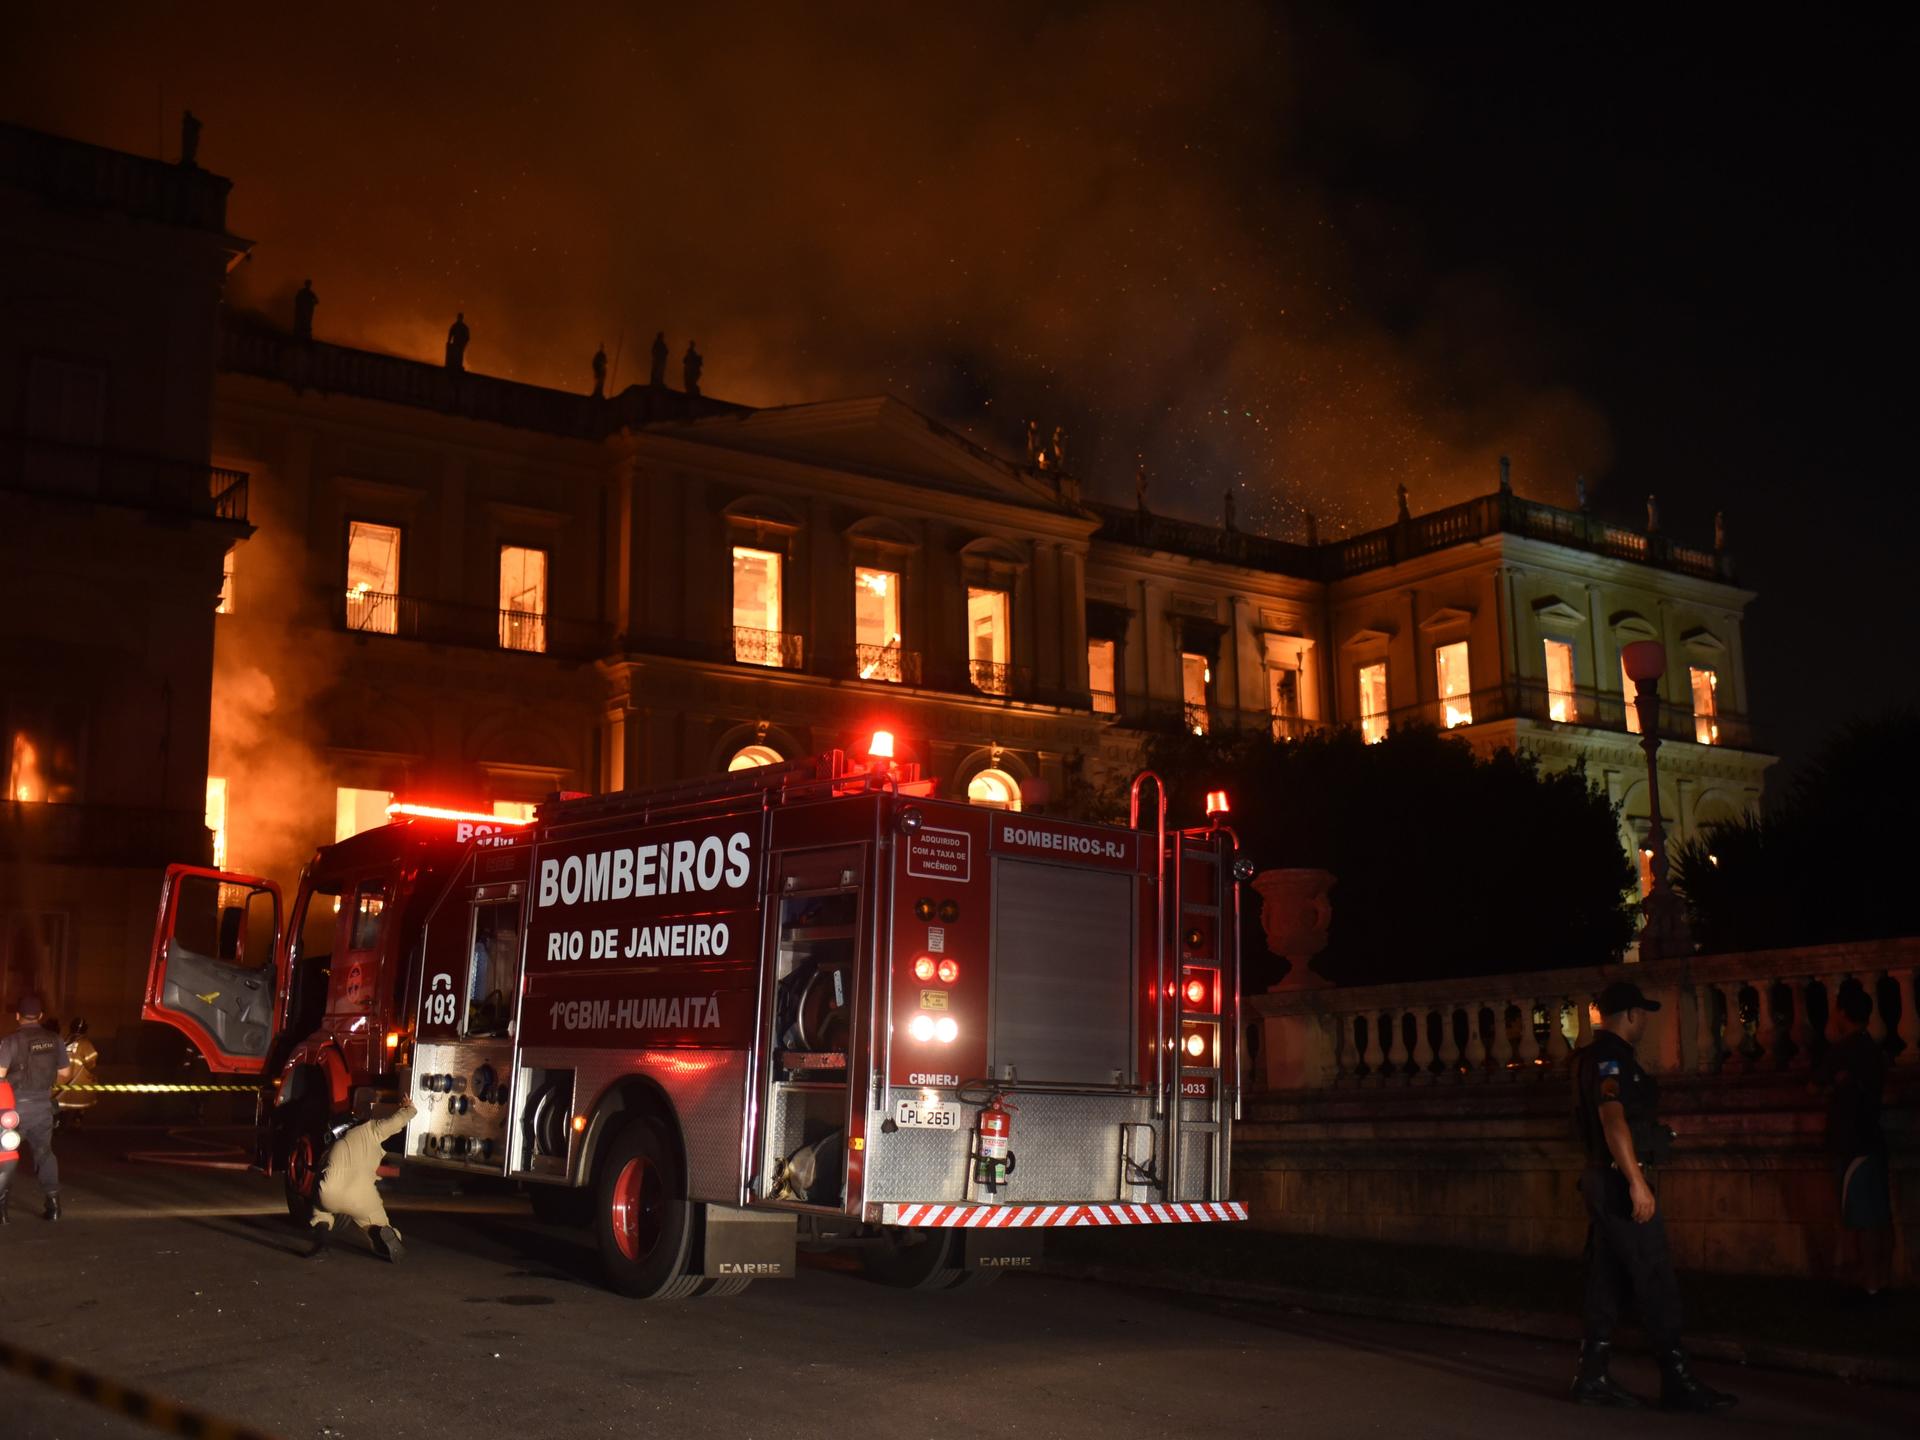 Einsatzkräfte der Feuerwehr sind bei einem Brand im brasilianischen Nationalmuseum im Einsatz.